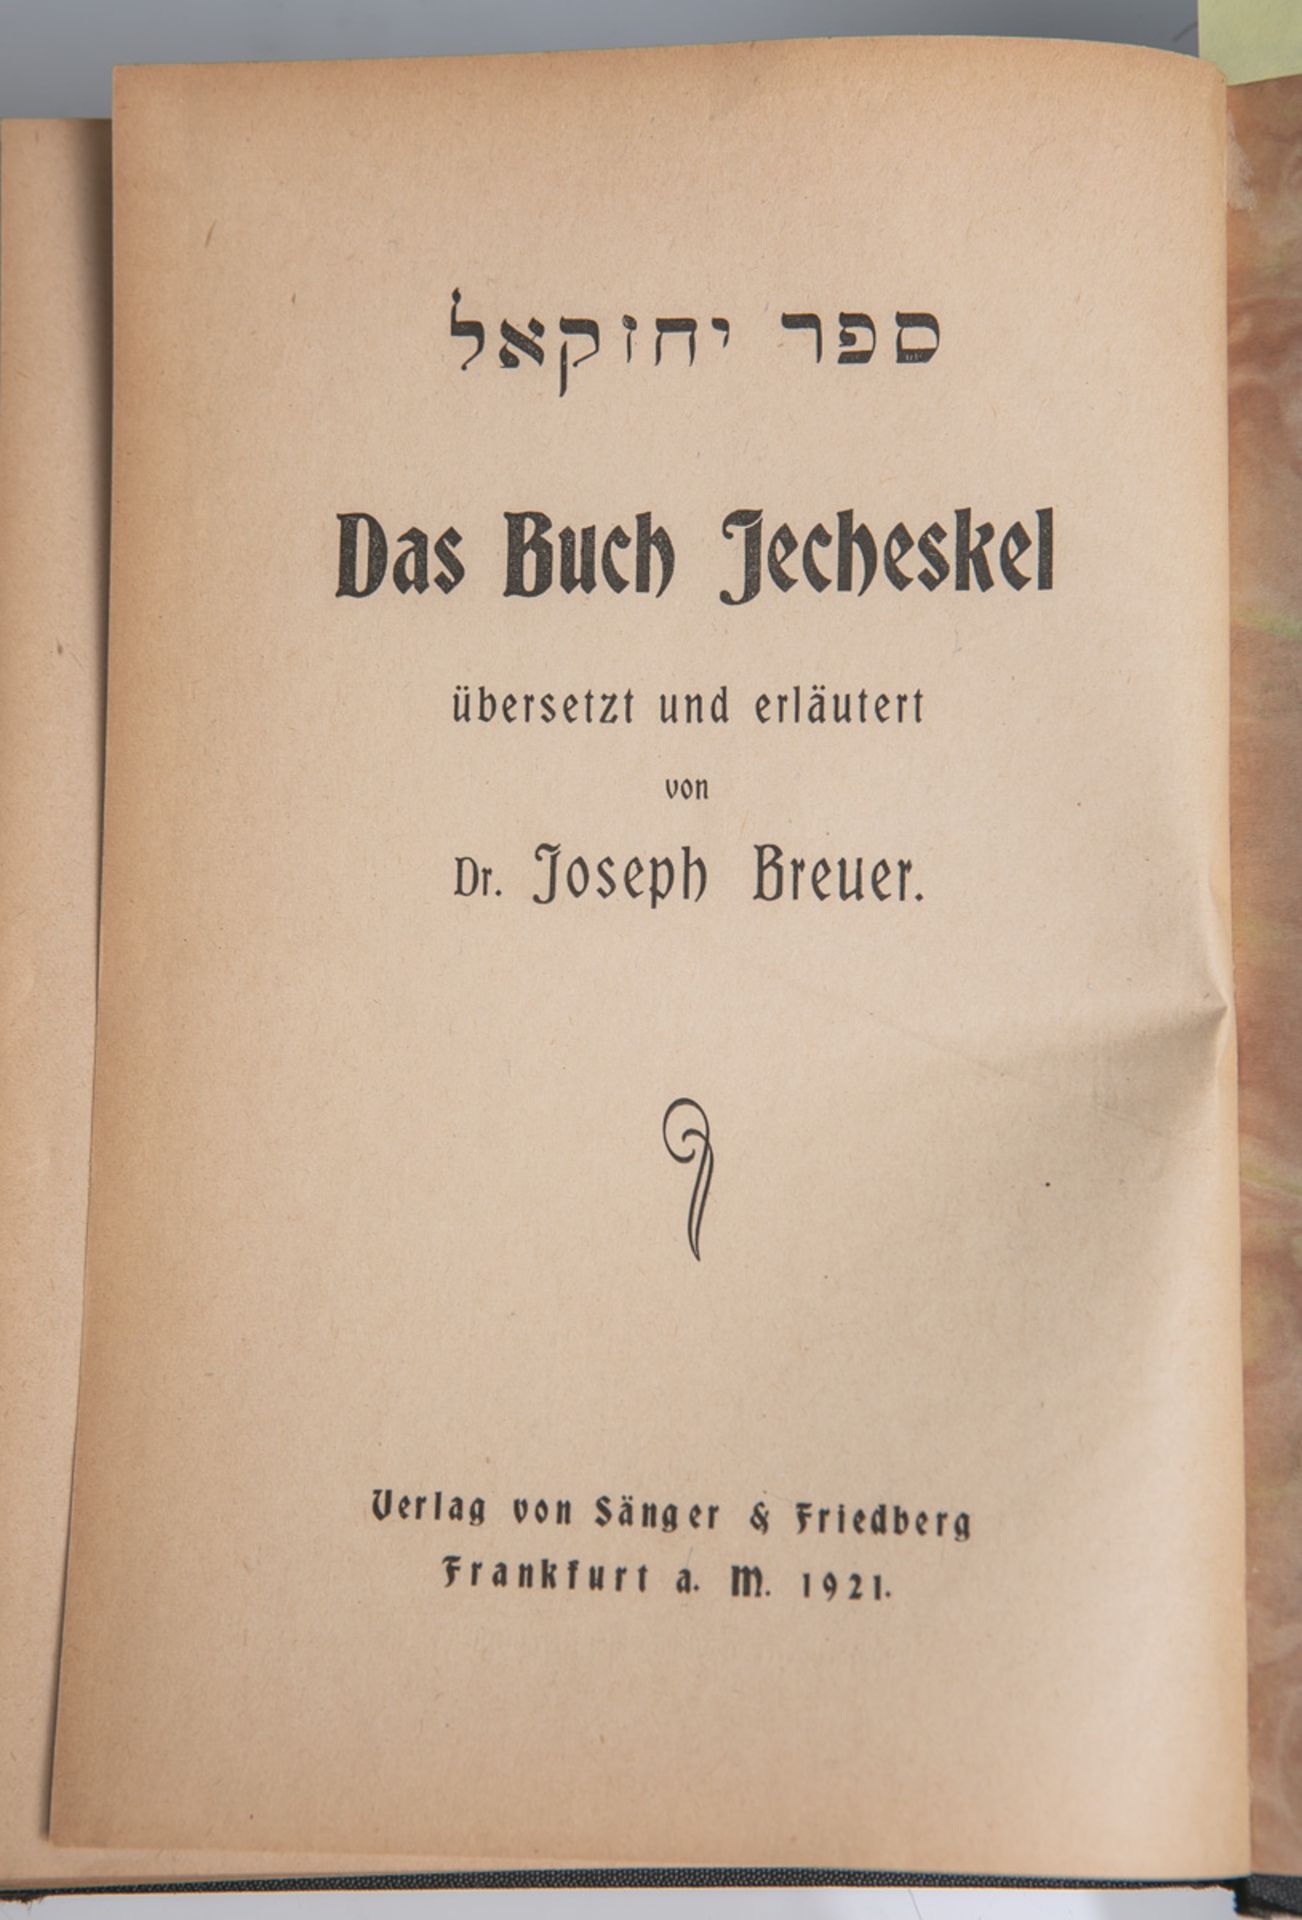 "Das Buch Jecheskel", übers. u. erläutert von Dr. Joseph Breuer - Image 2 of 2